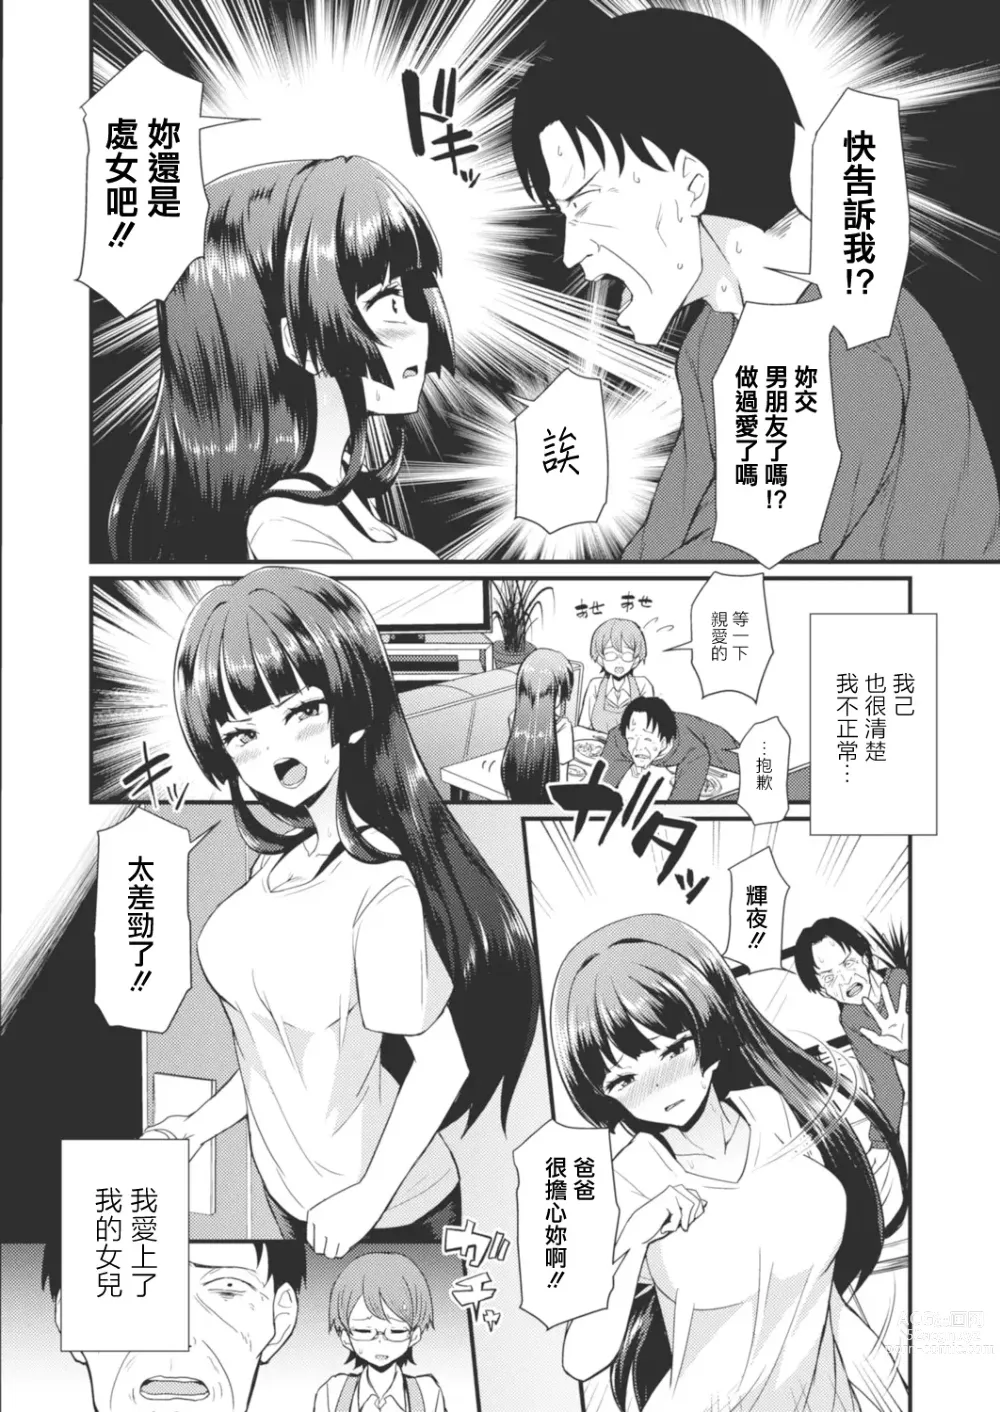 Page 4 of manga Gendai Shikiyoku Yotogibanashi Daiichiya Kaguya no Shokuzai